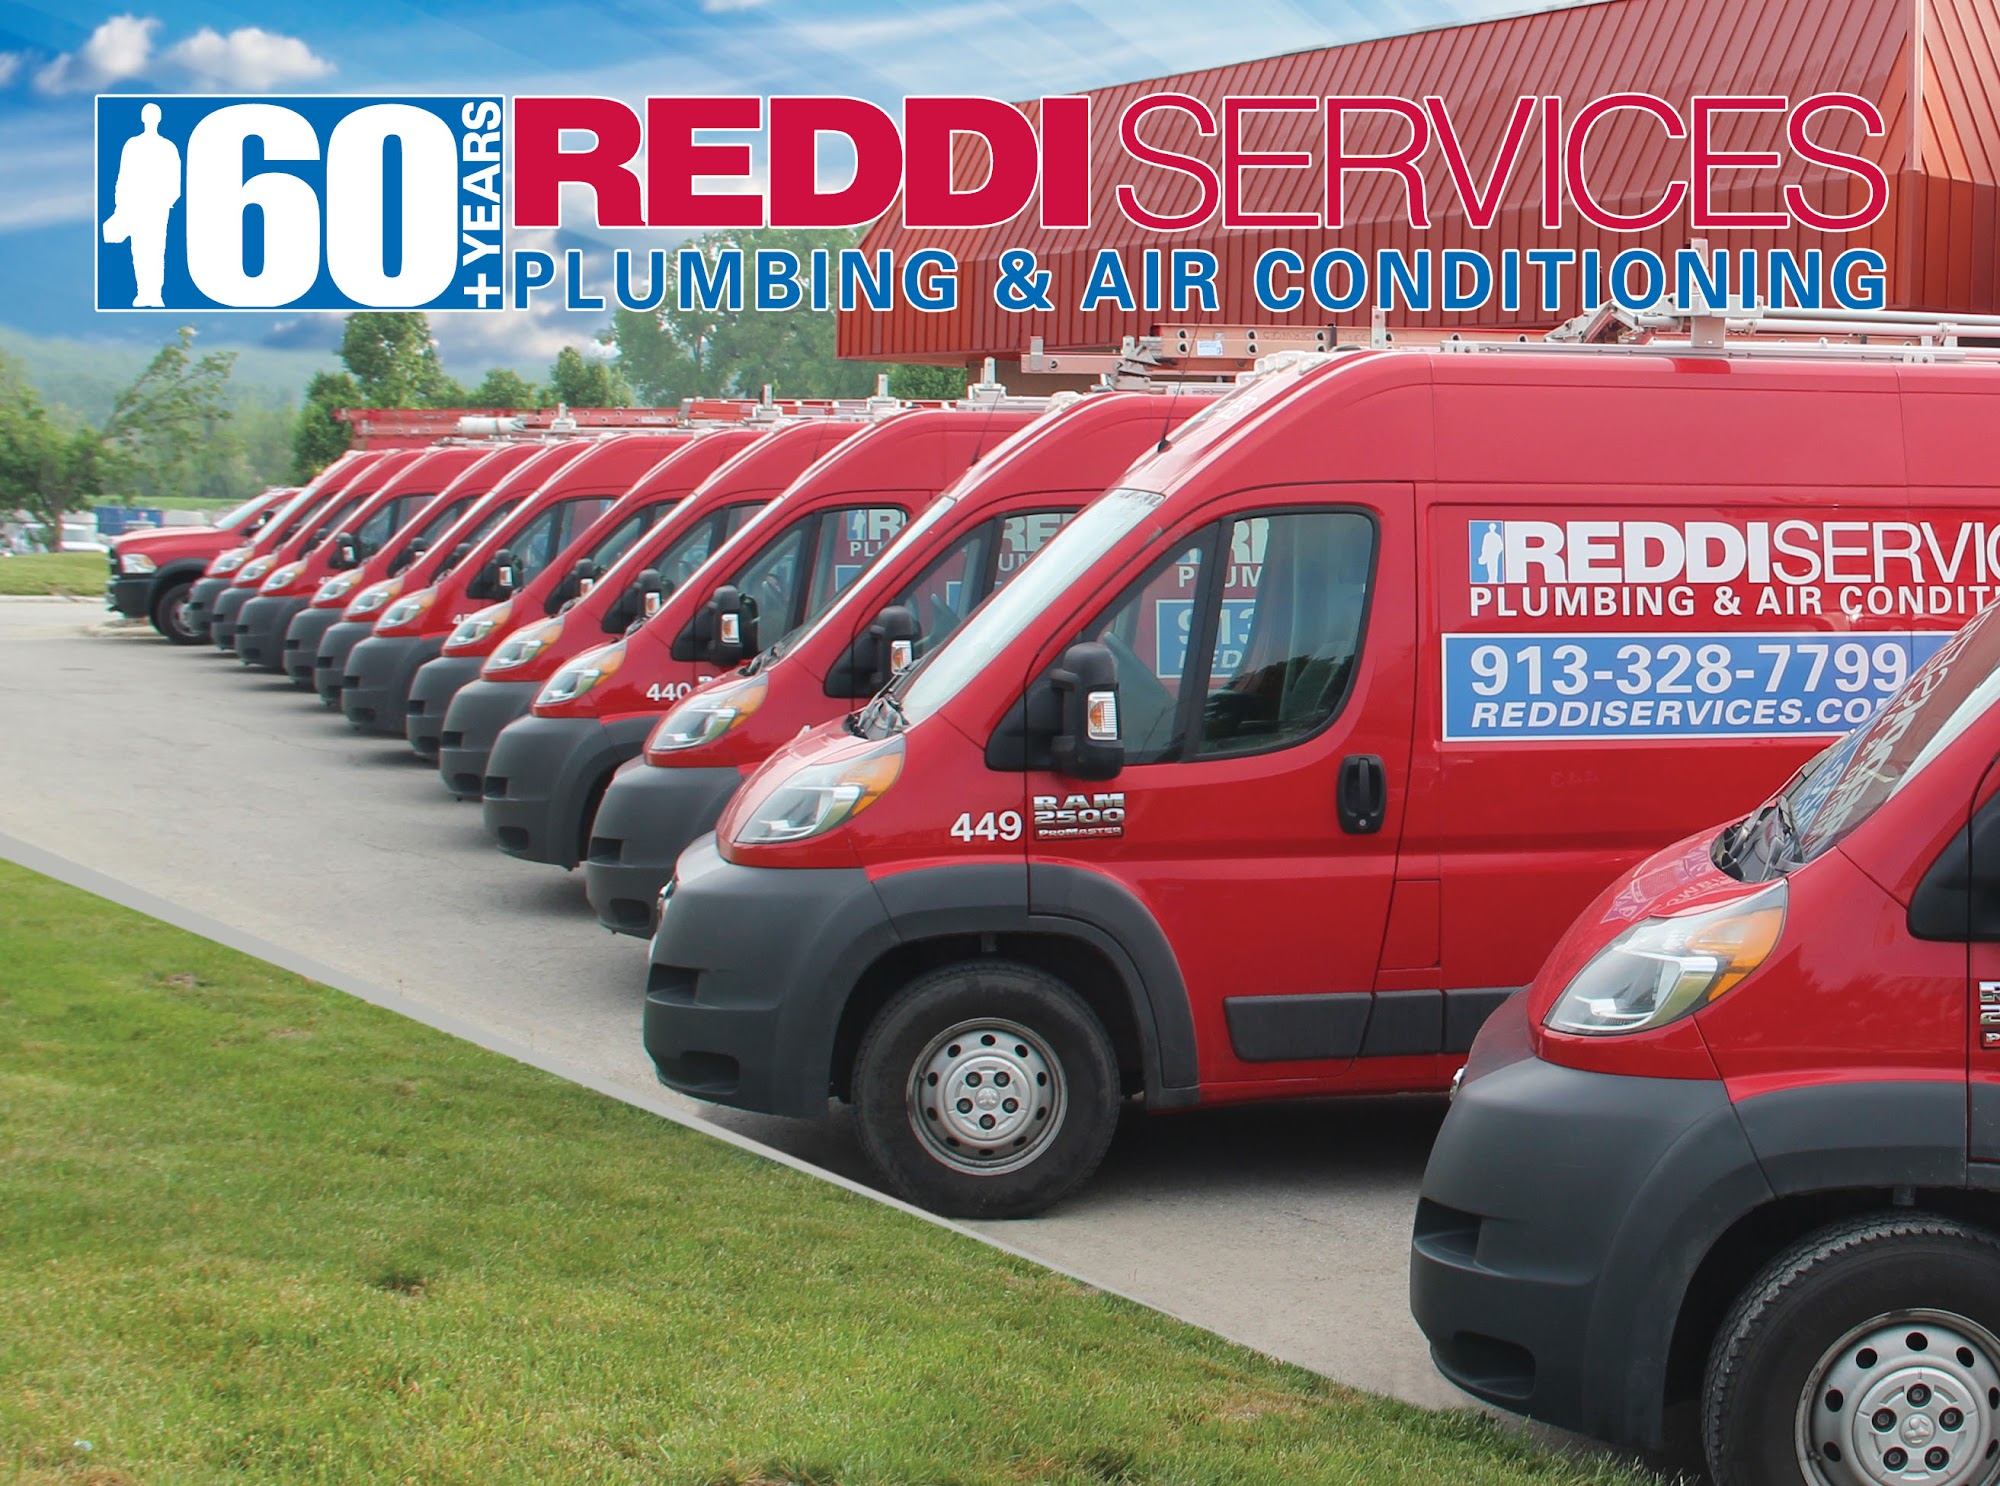 Reddi Services